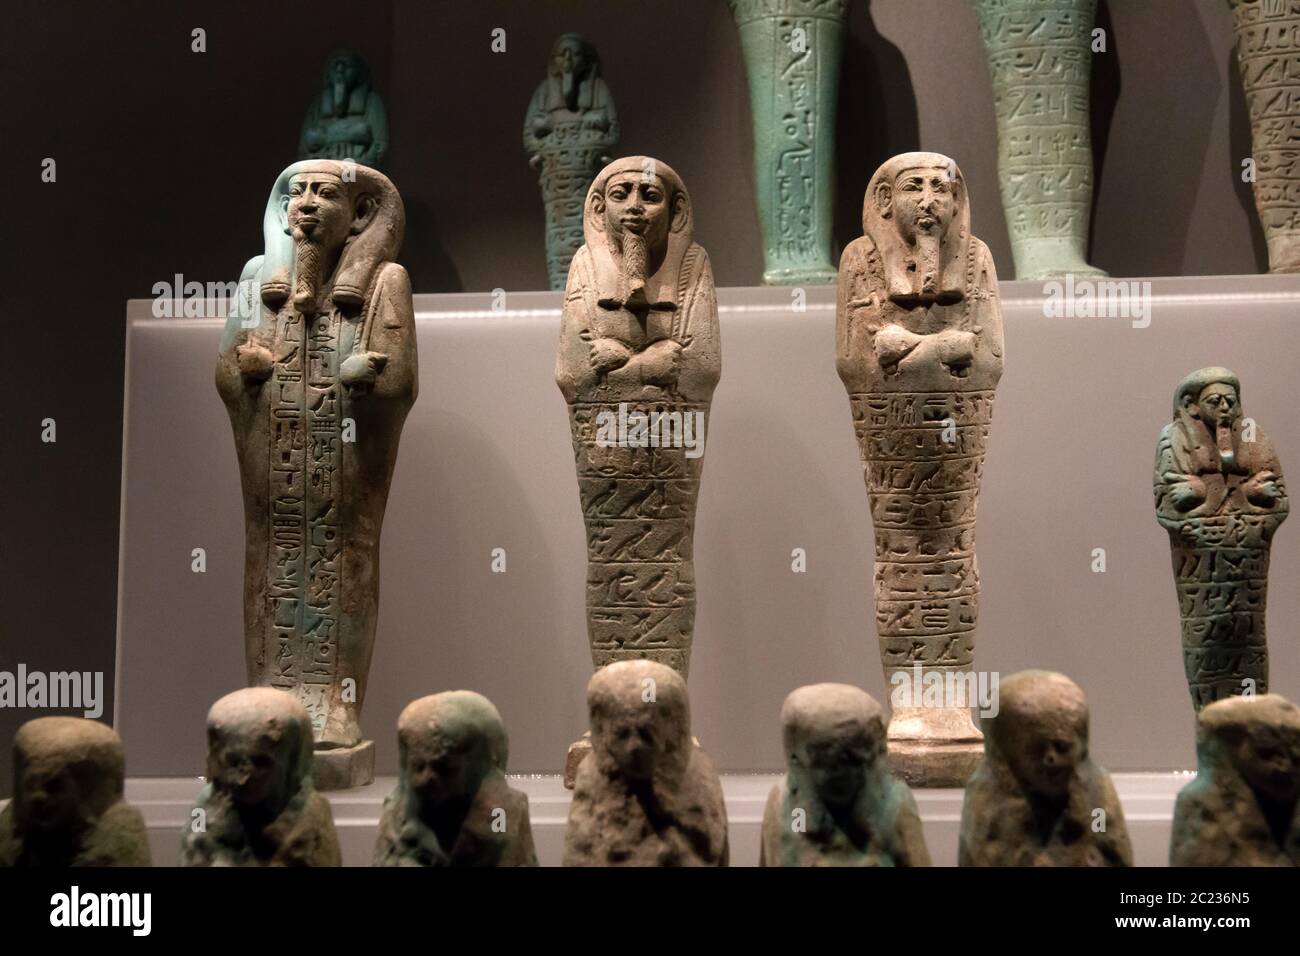 Leiden, Niederlande 26. JAN 2019: Kleine antike Steinfiguren aus Shabti mummiform auf der Ausstellung Gods of Egypt in Leiden. Grabfiguren. Stockfoto